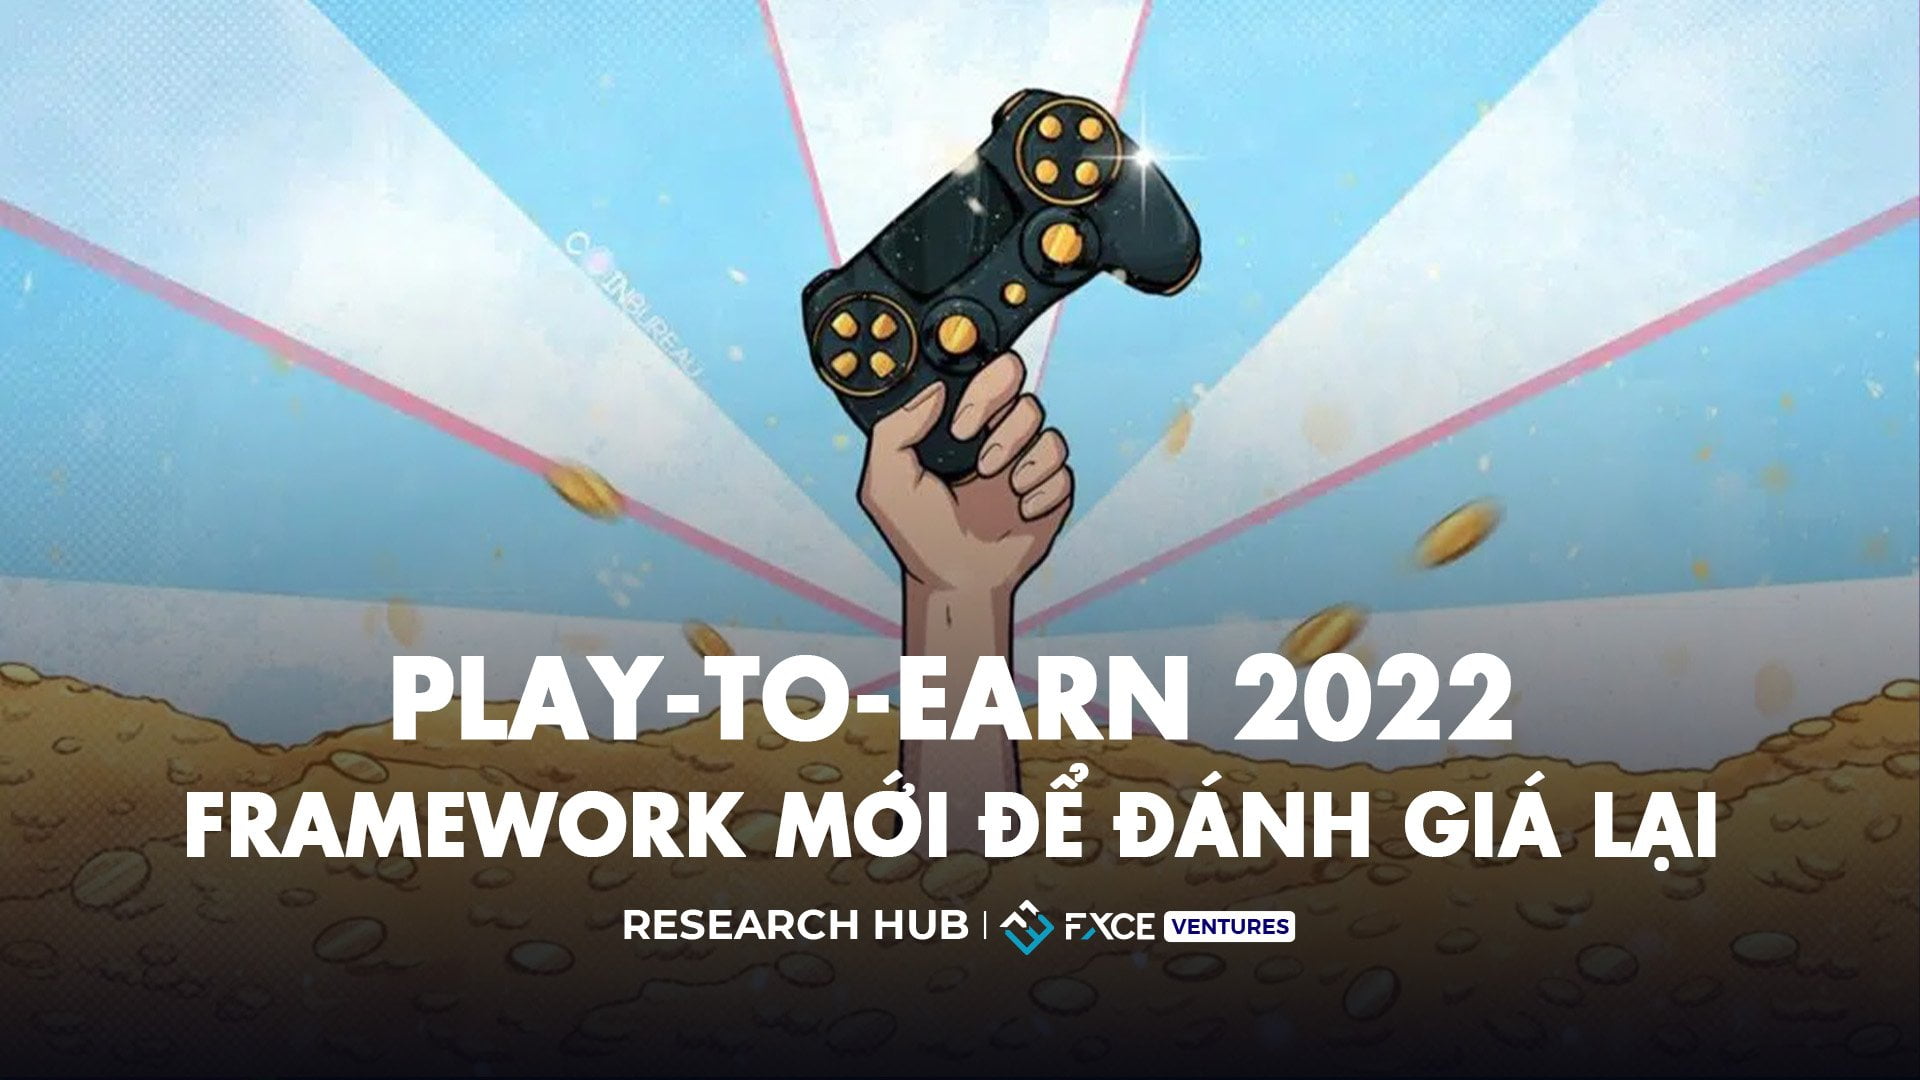 Tìm hiểu framework mới để đánh giá lại Play-to-Earn 2022